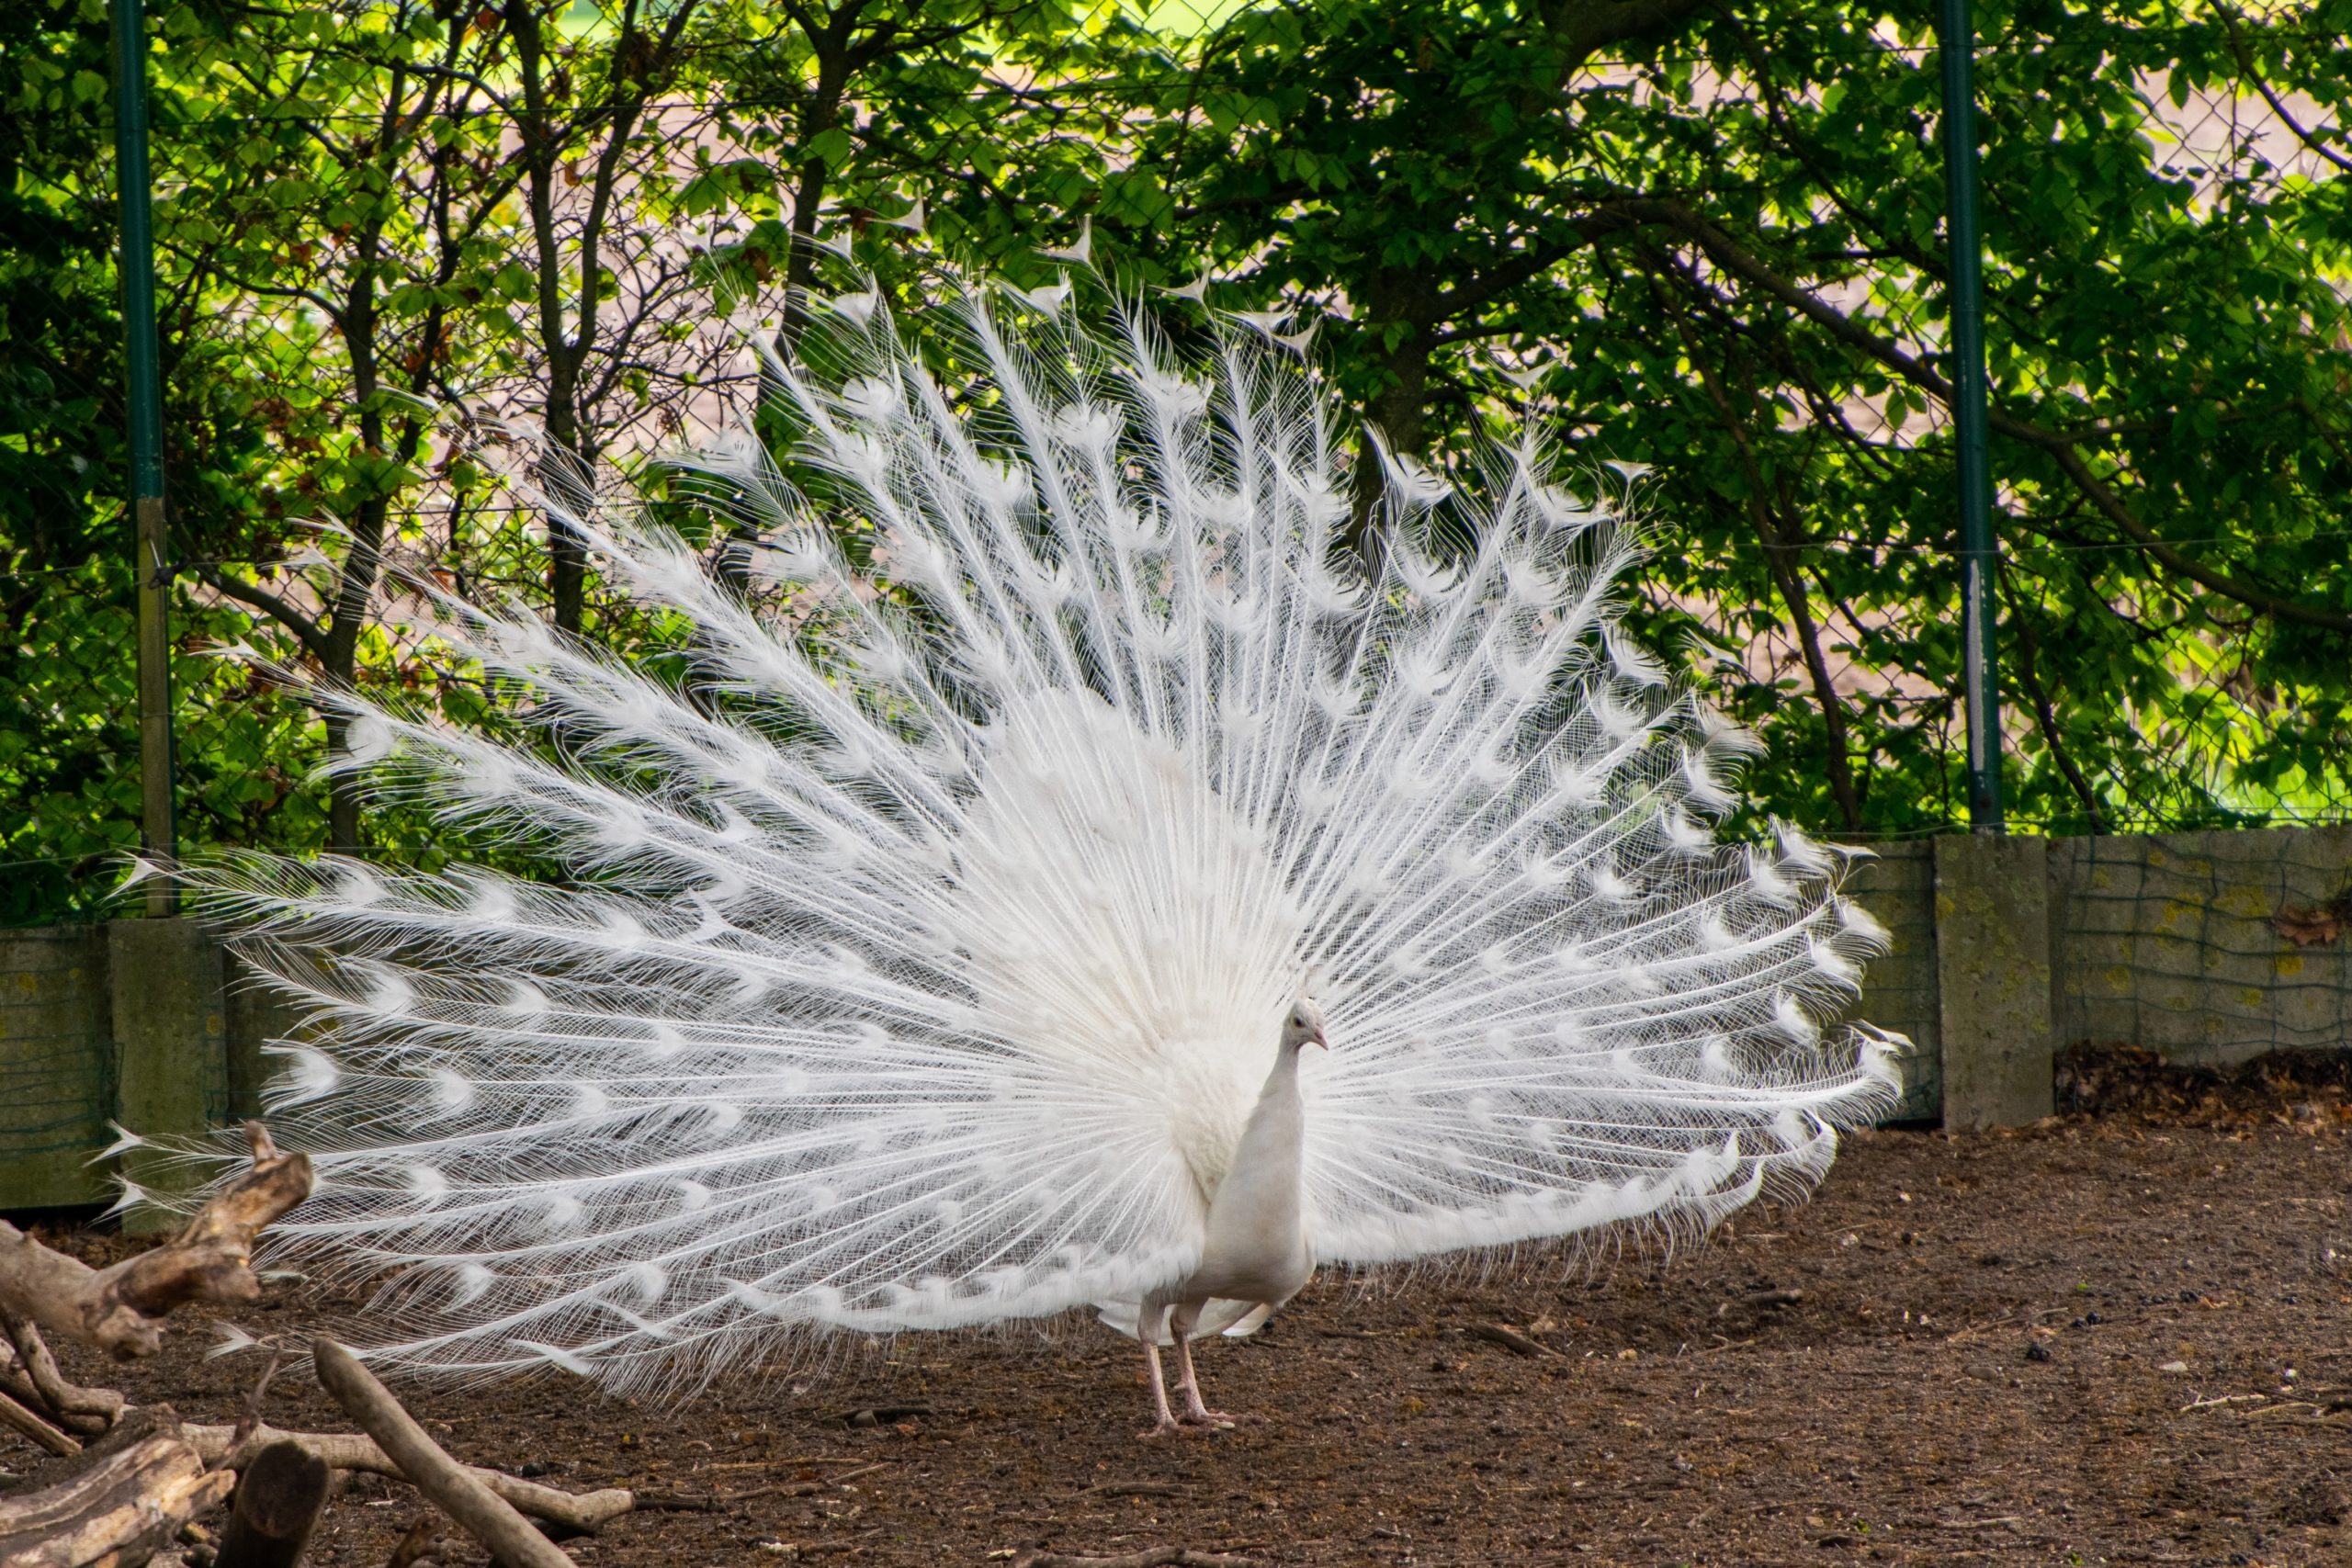 A white peacock.